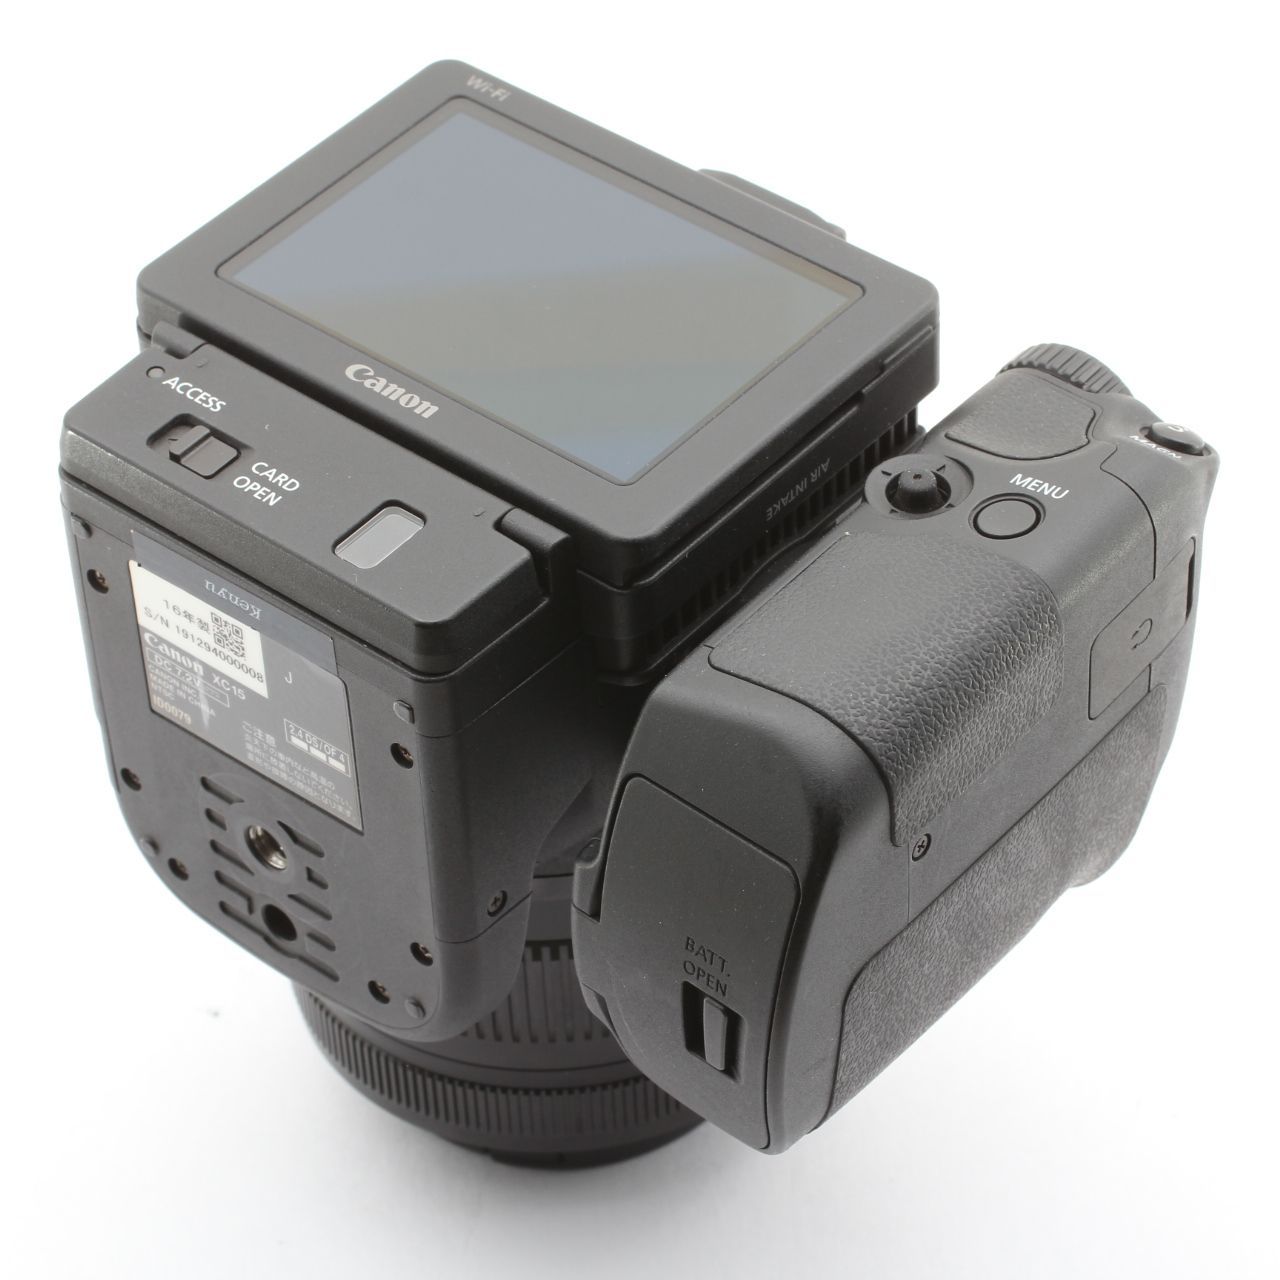 最低価格CANON XC15 4K ビデオカメラ 付属品多数 送料無料 美品 プロ用、業務用